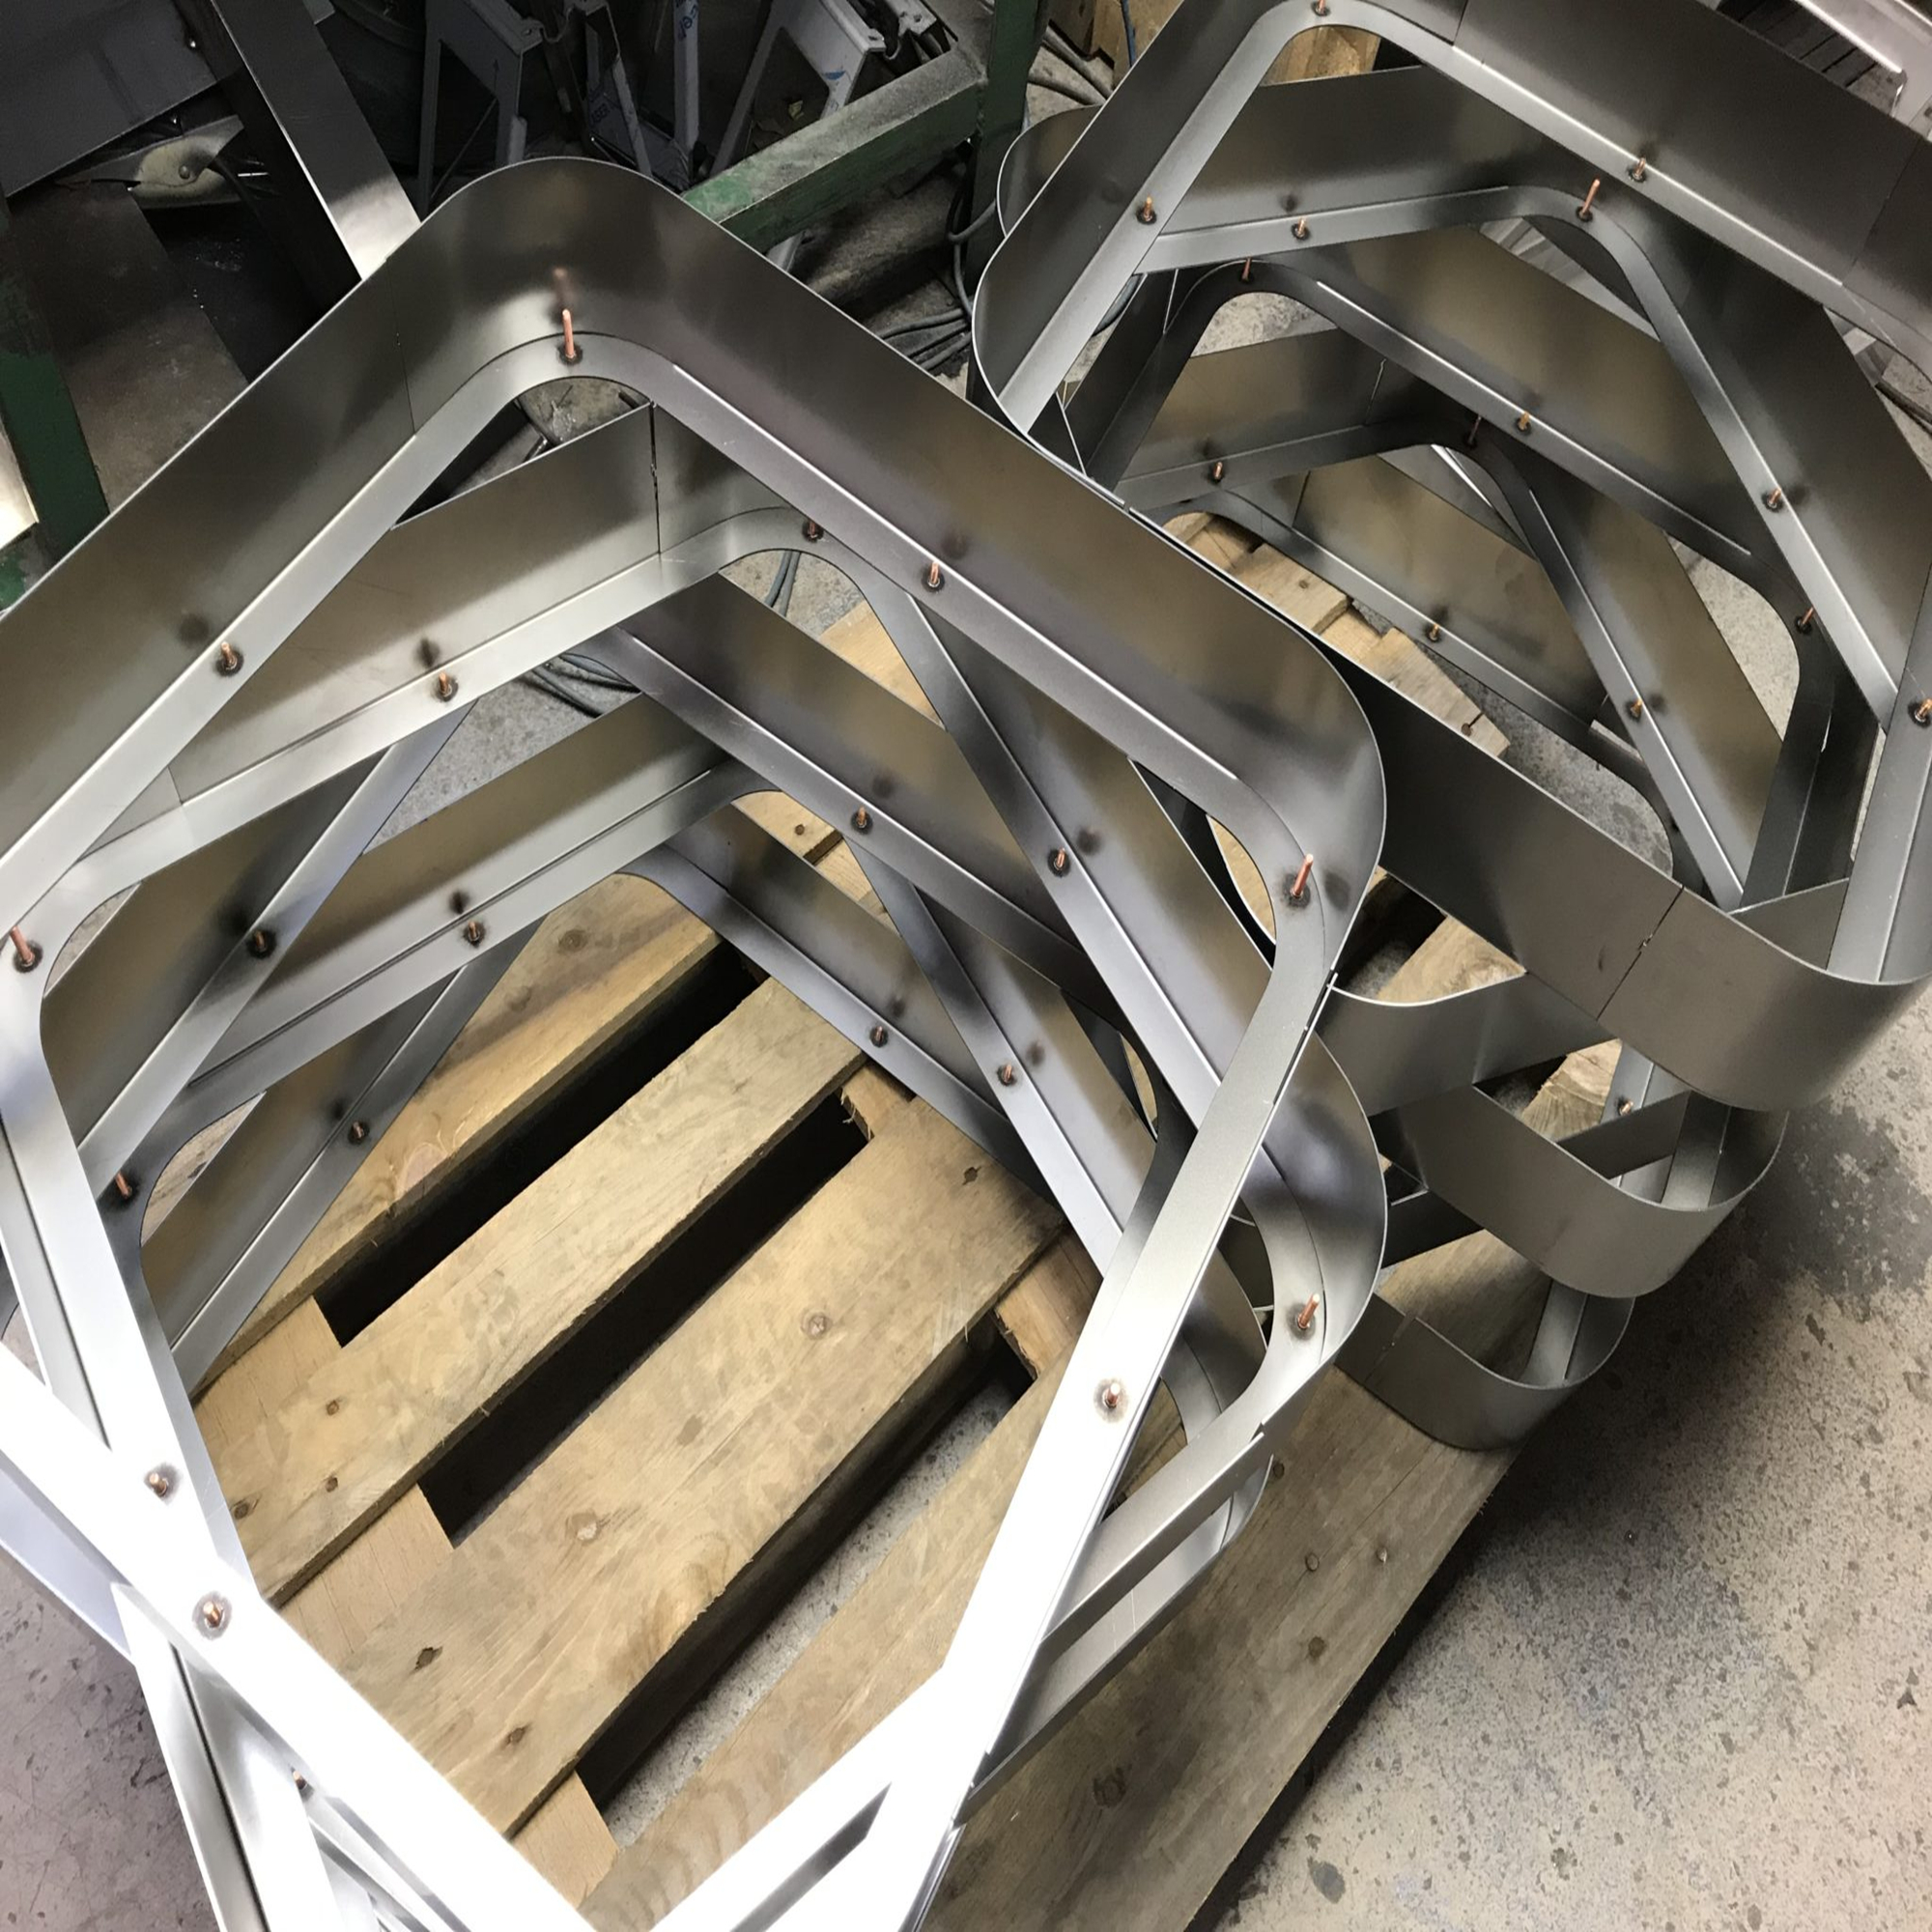 Customized sheet metal work frame fabrication